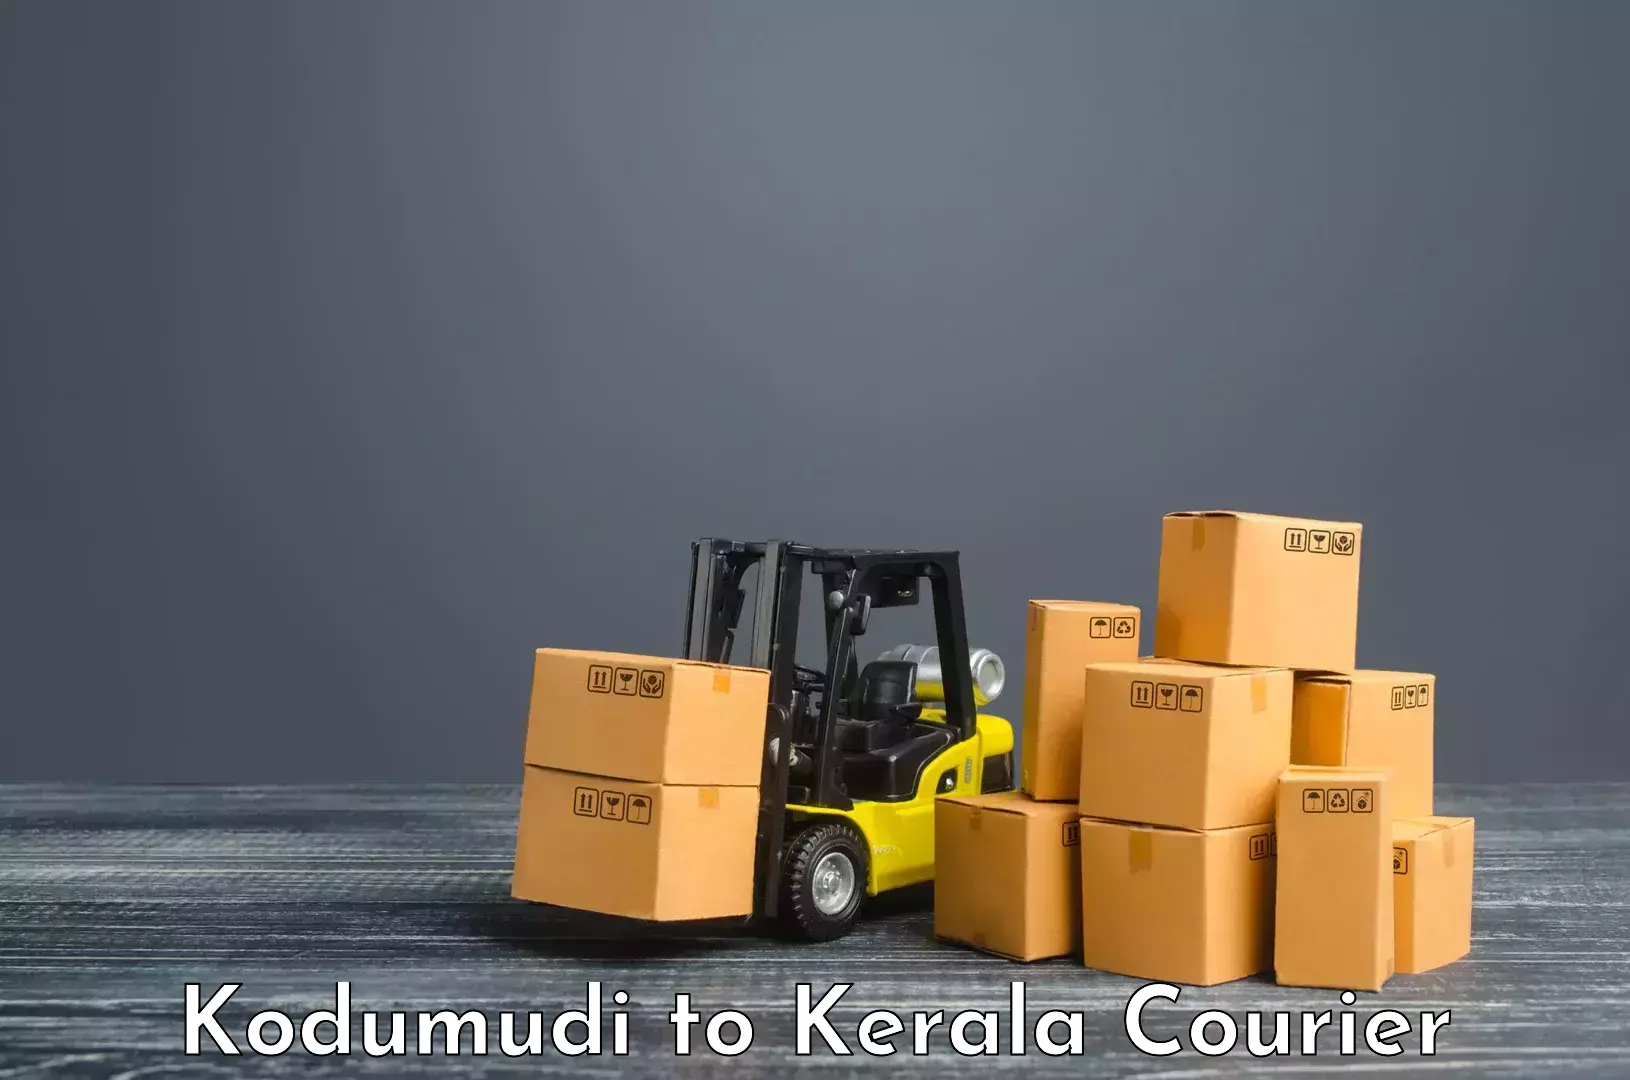 Flexible shipping options Kodumudi to Cochin Port Kochi